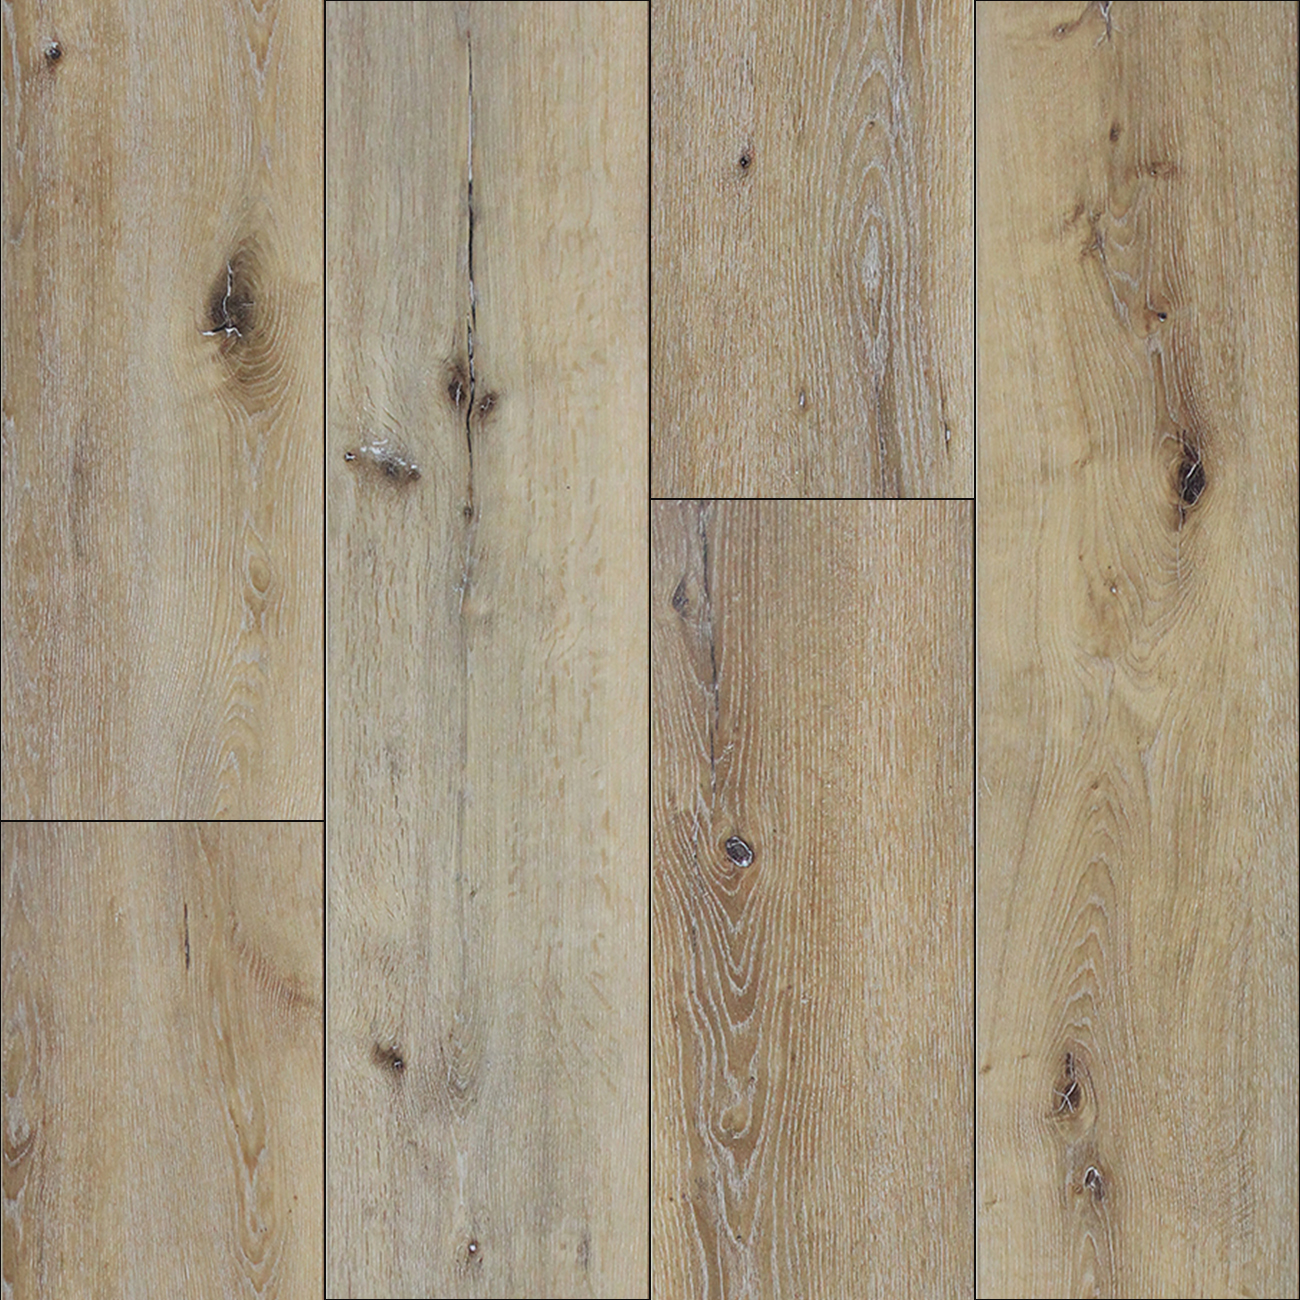 Antique Pine Vinyl Wpc District Floor, Antique Pine Laminate Flooring